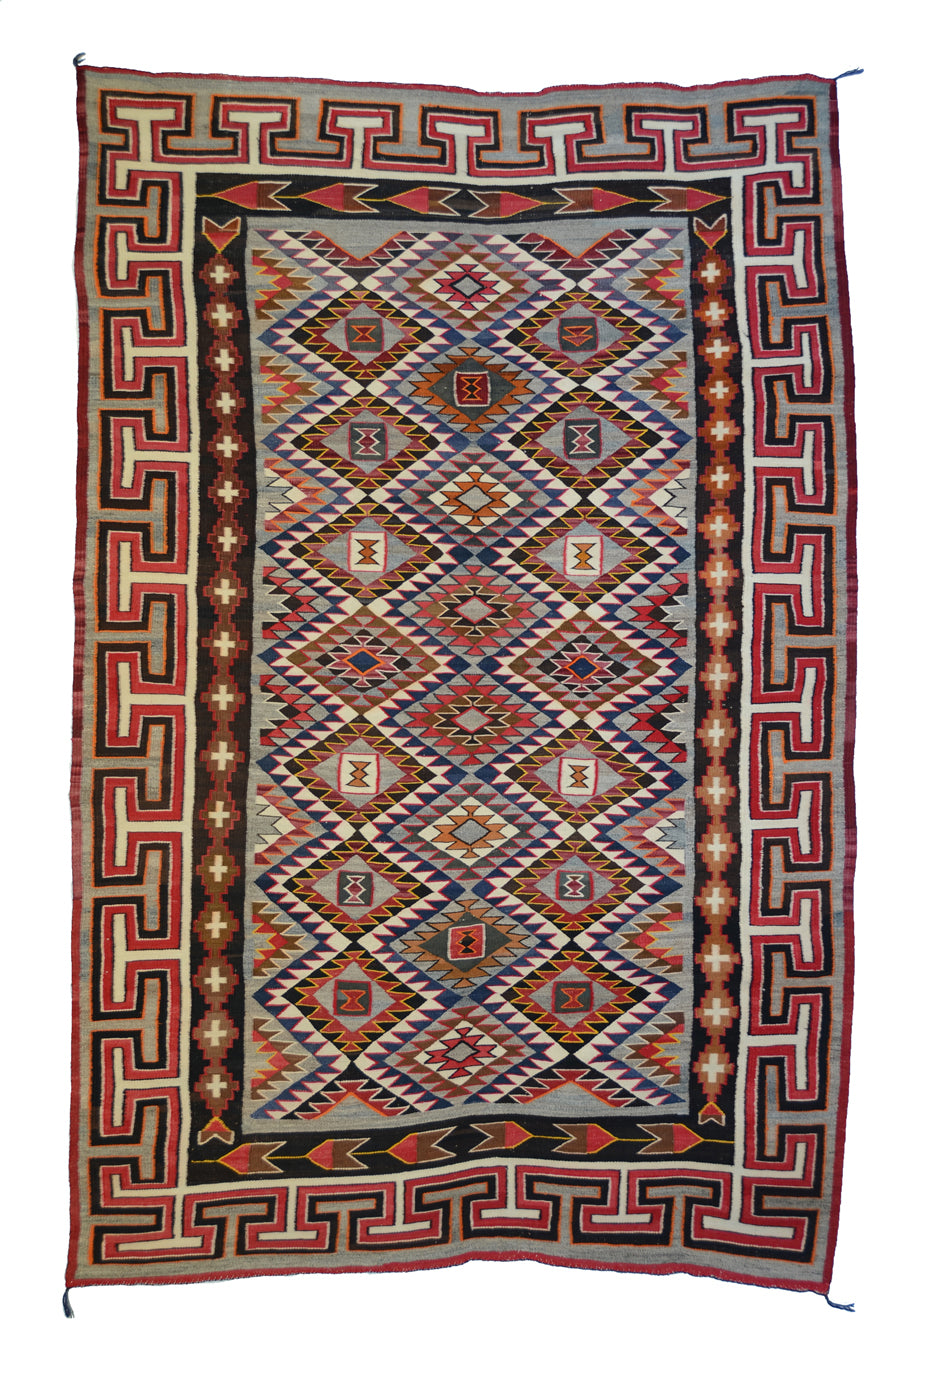 SOLD - Teec Nos Pos Navajo Weaving : Antique : GHT 84 : 62" x 100" : (5'2" x 8'4")